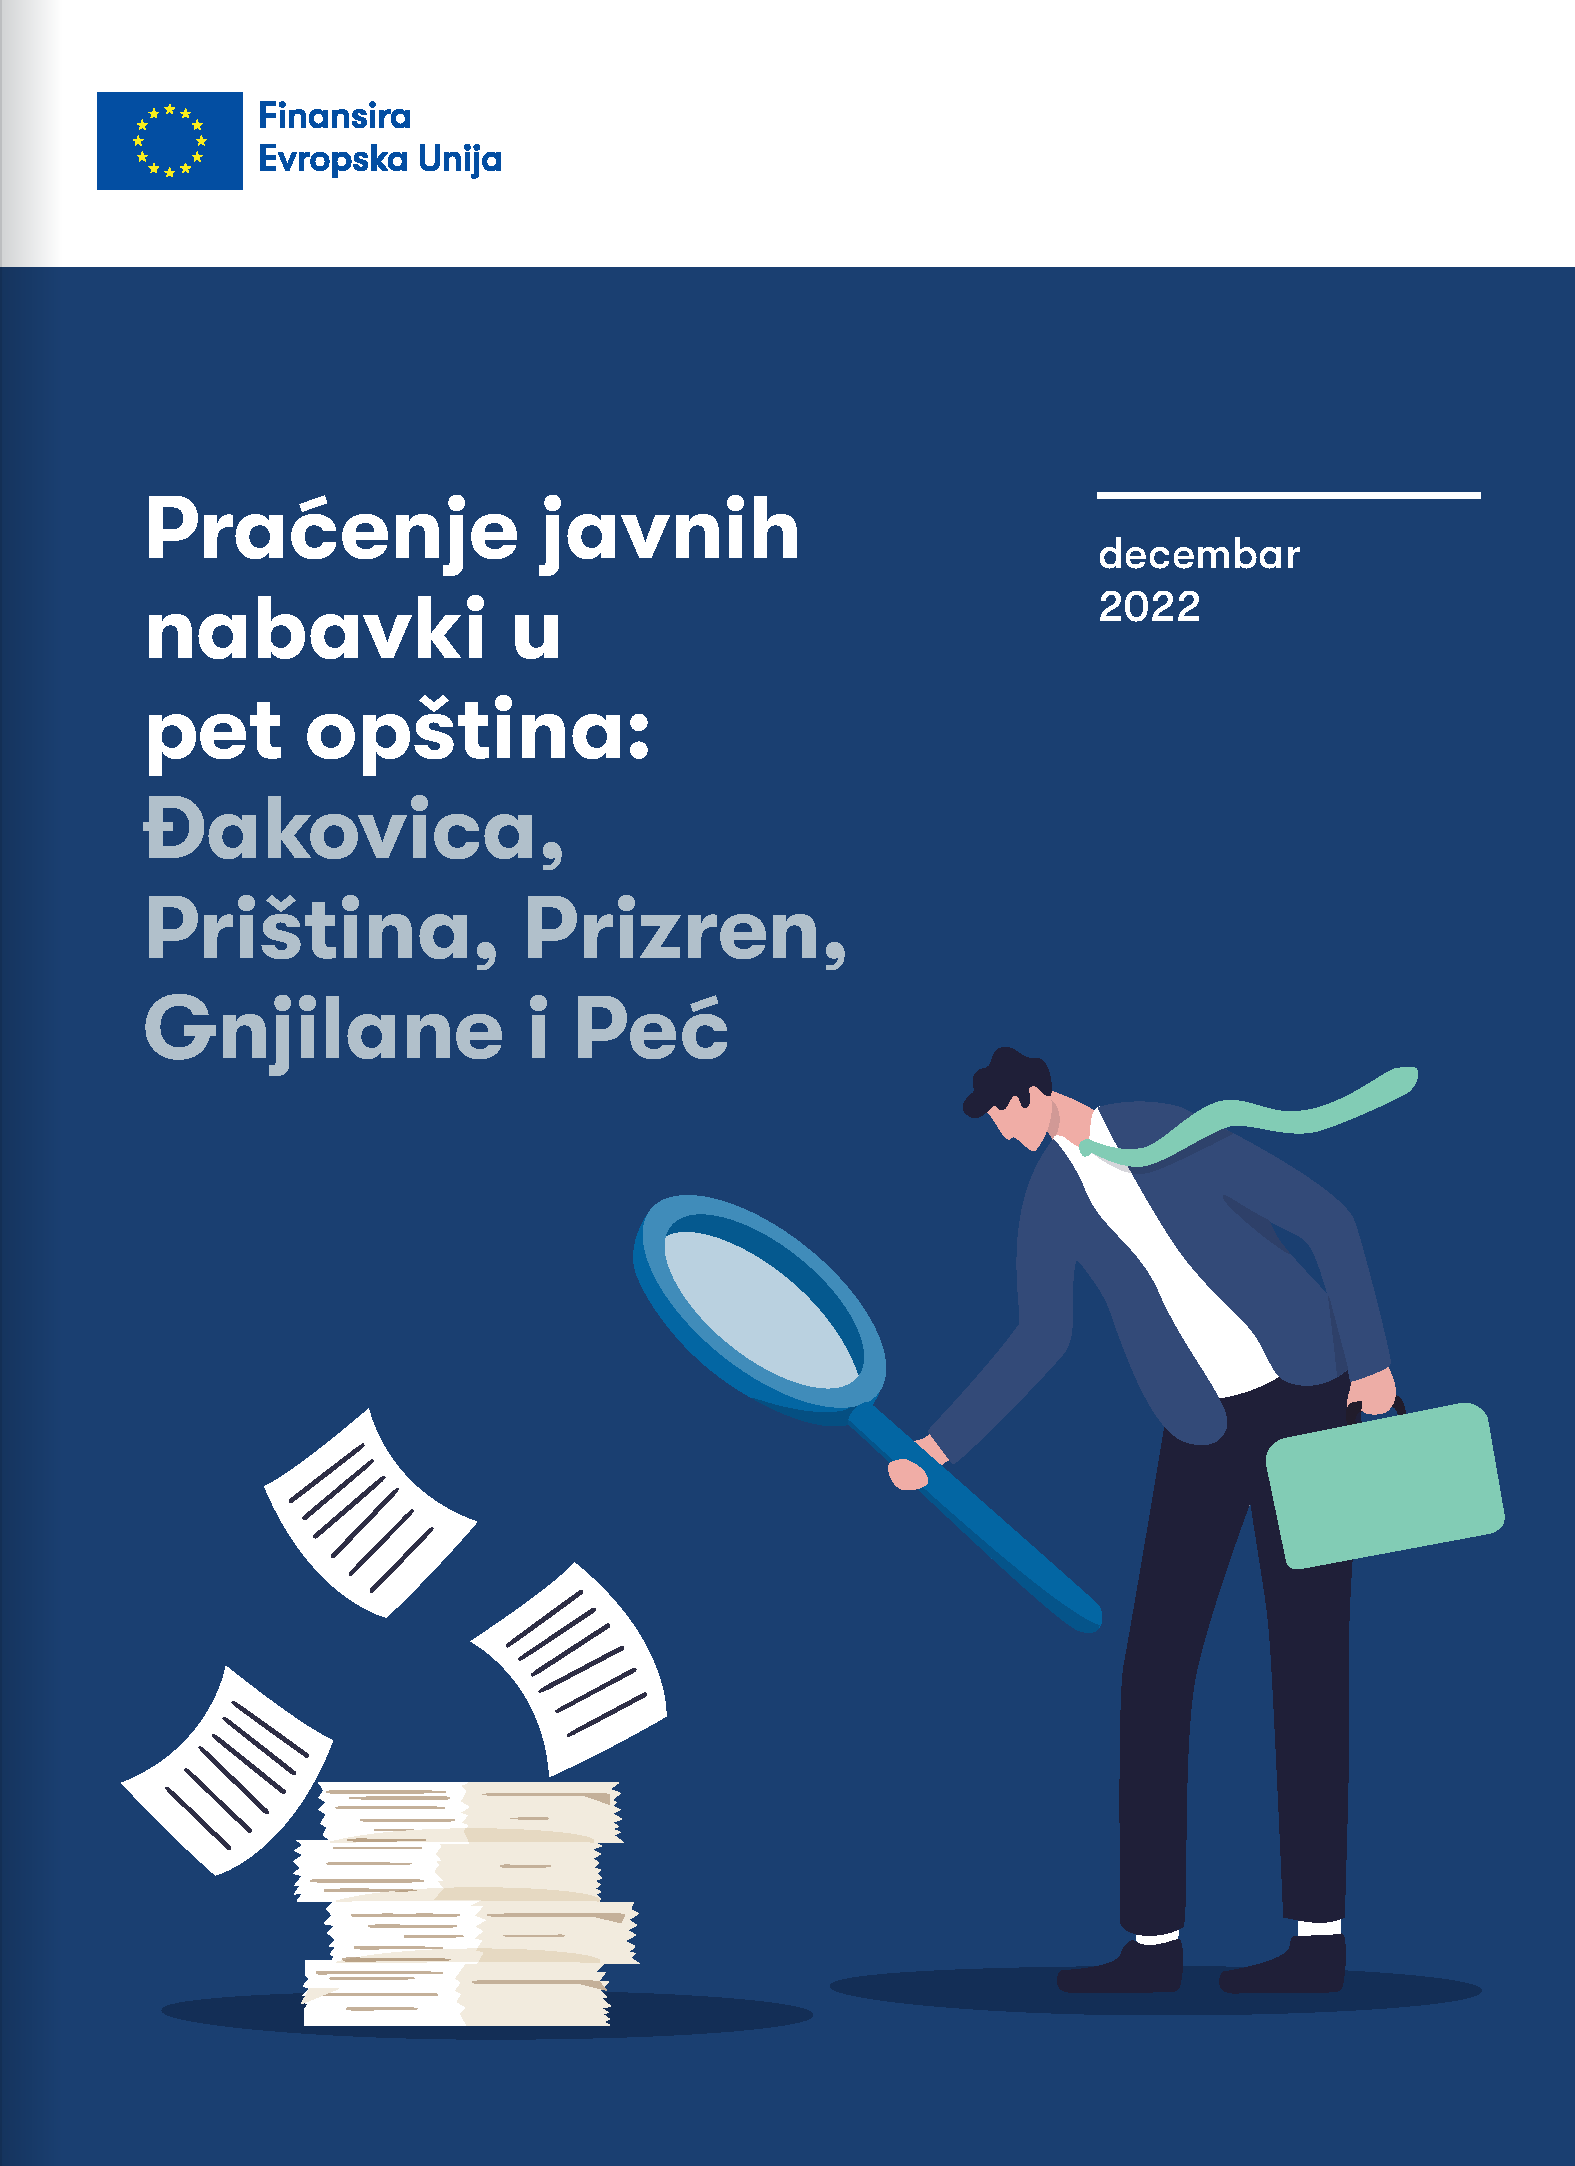 Praćenje javnih nabavki u pet opština: Đakovica, Priština, Prizren, Gnjilane i Peć